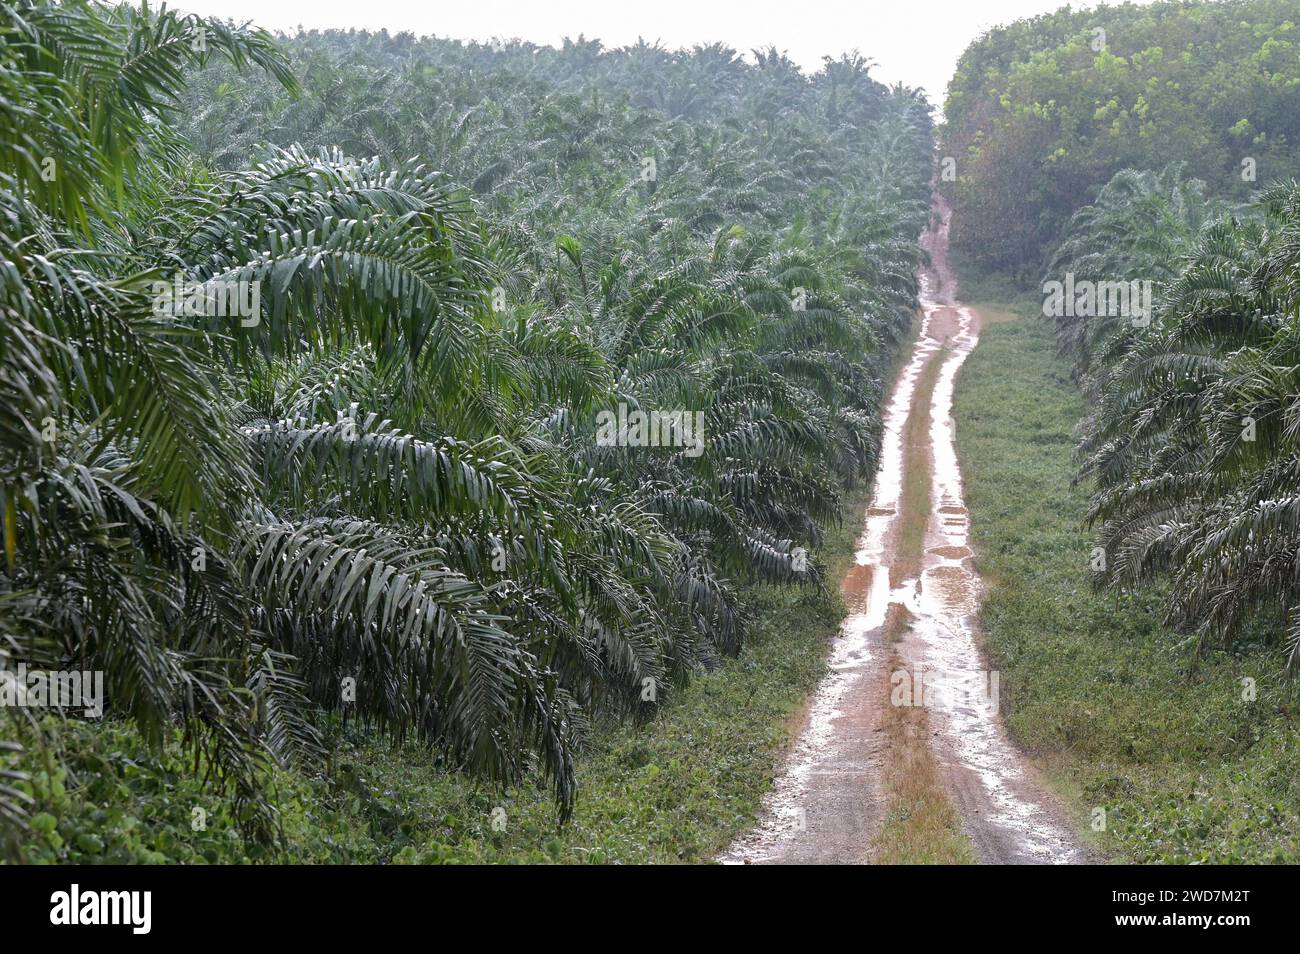 GHANA, Kwae, GOPDC, membro del Siat Group del Belgio, è un'azienda agro-industriale integrata specializzata nella coltivazione di palma da olio, estrazione di olio di palma greggio e di olio di palma, piantagione di palma da olio / GHANA, Ölpalmen Plantage von GOPDC a Kwae Foto Stock